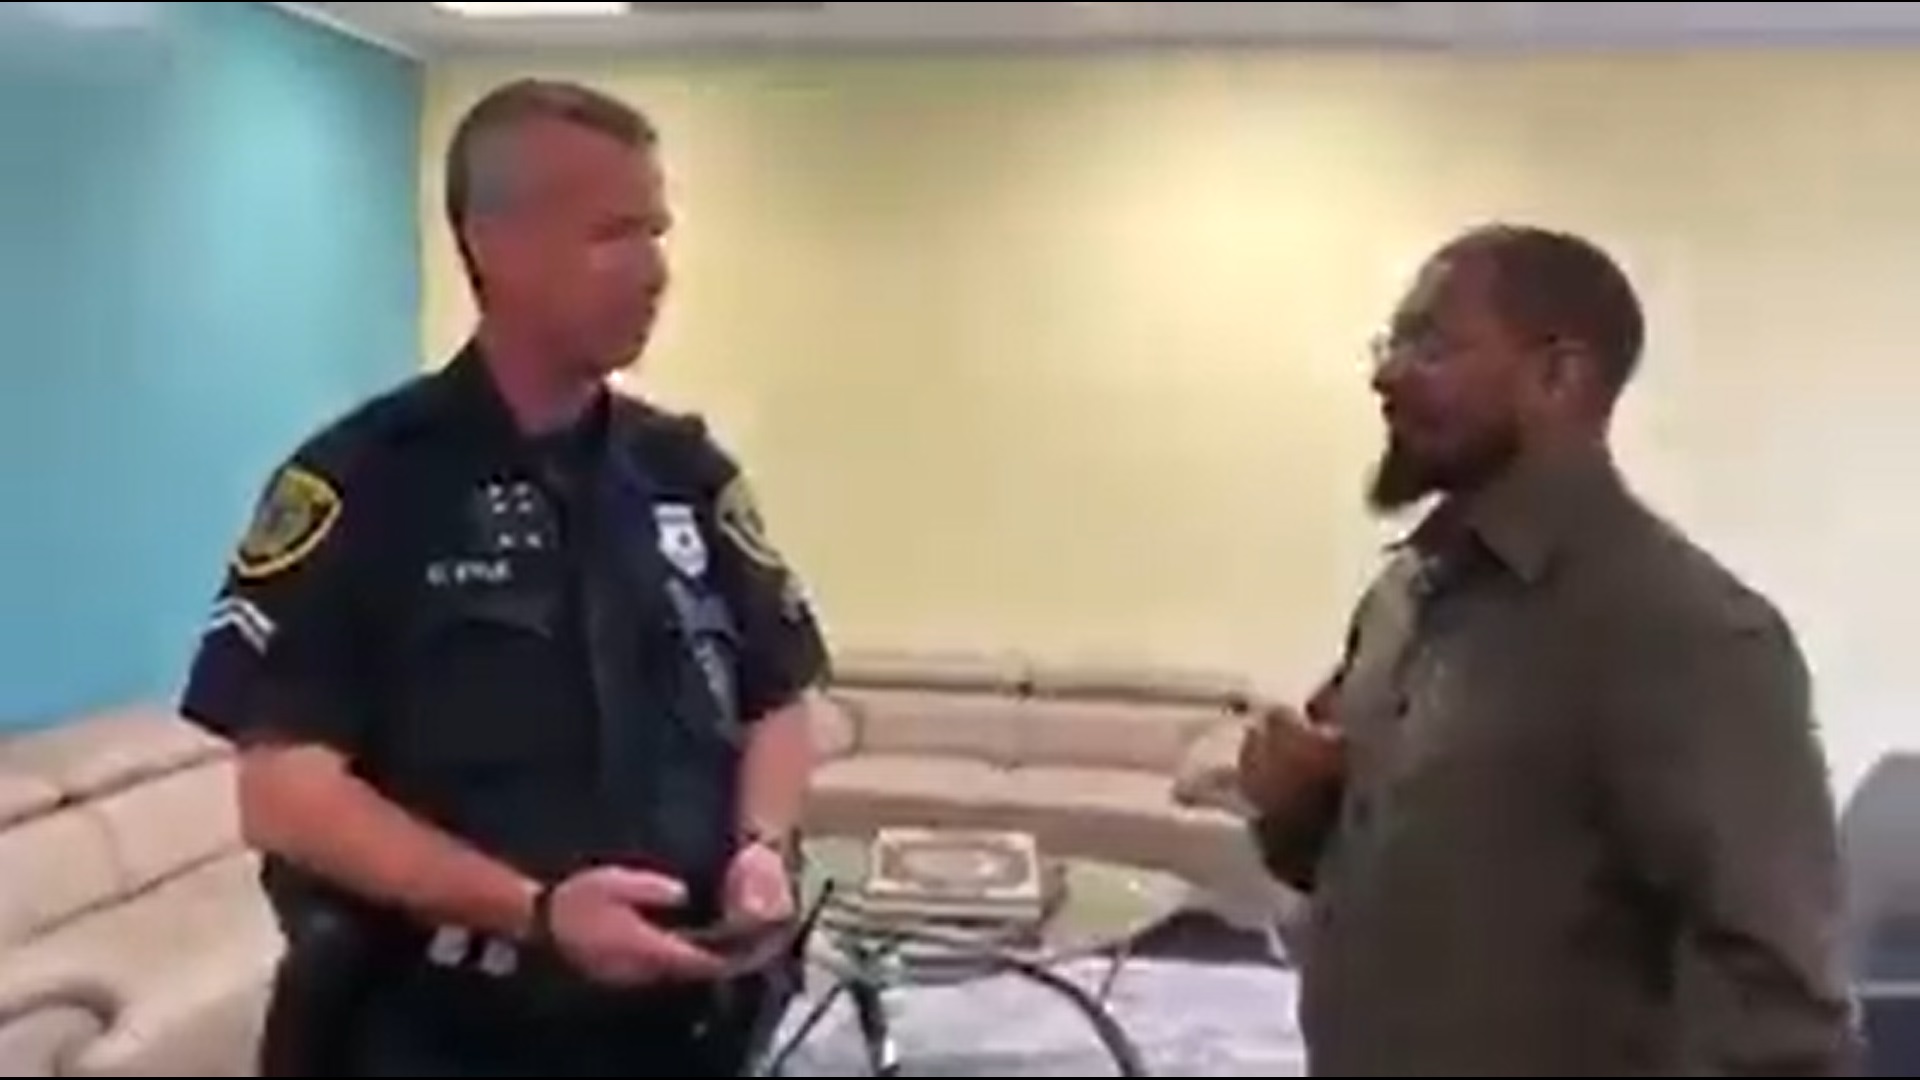 شاهد .. ضابط أمريكي يعتنق الإسلام وينطق بالشهادتين بالعربية والإنجليزية